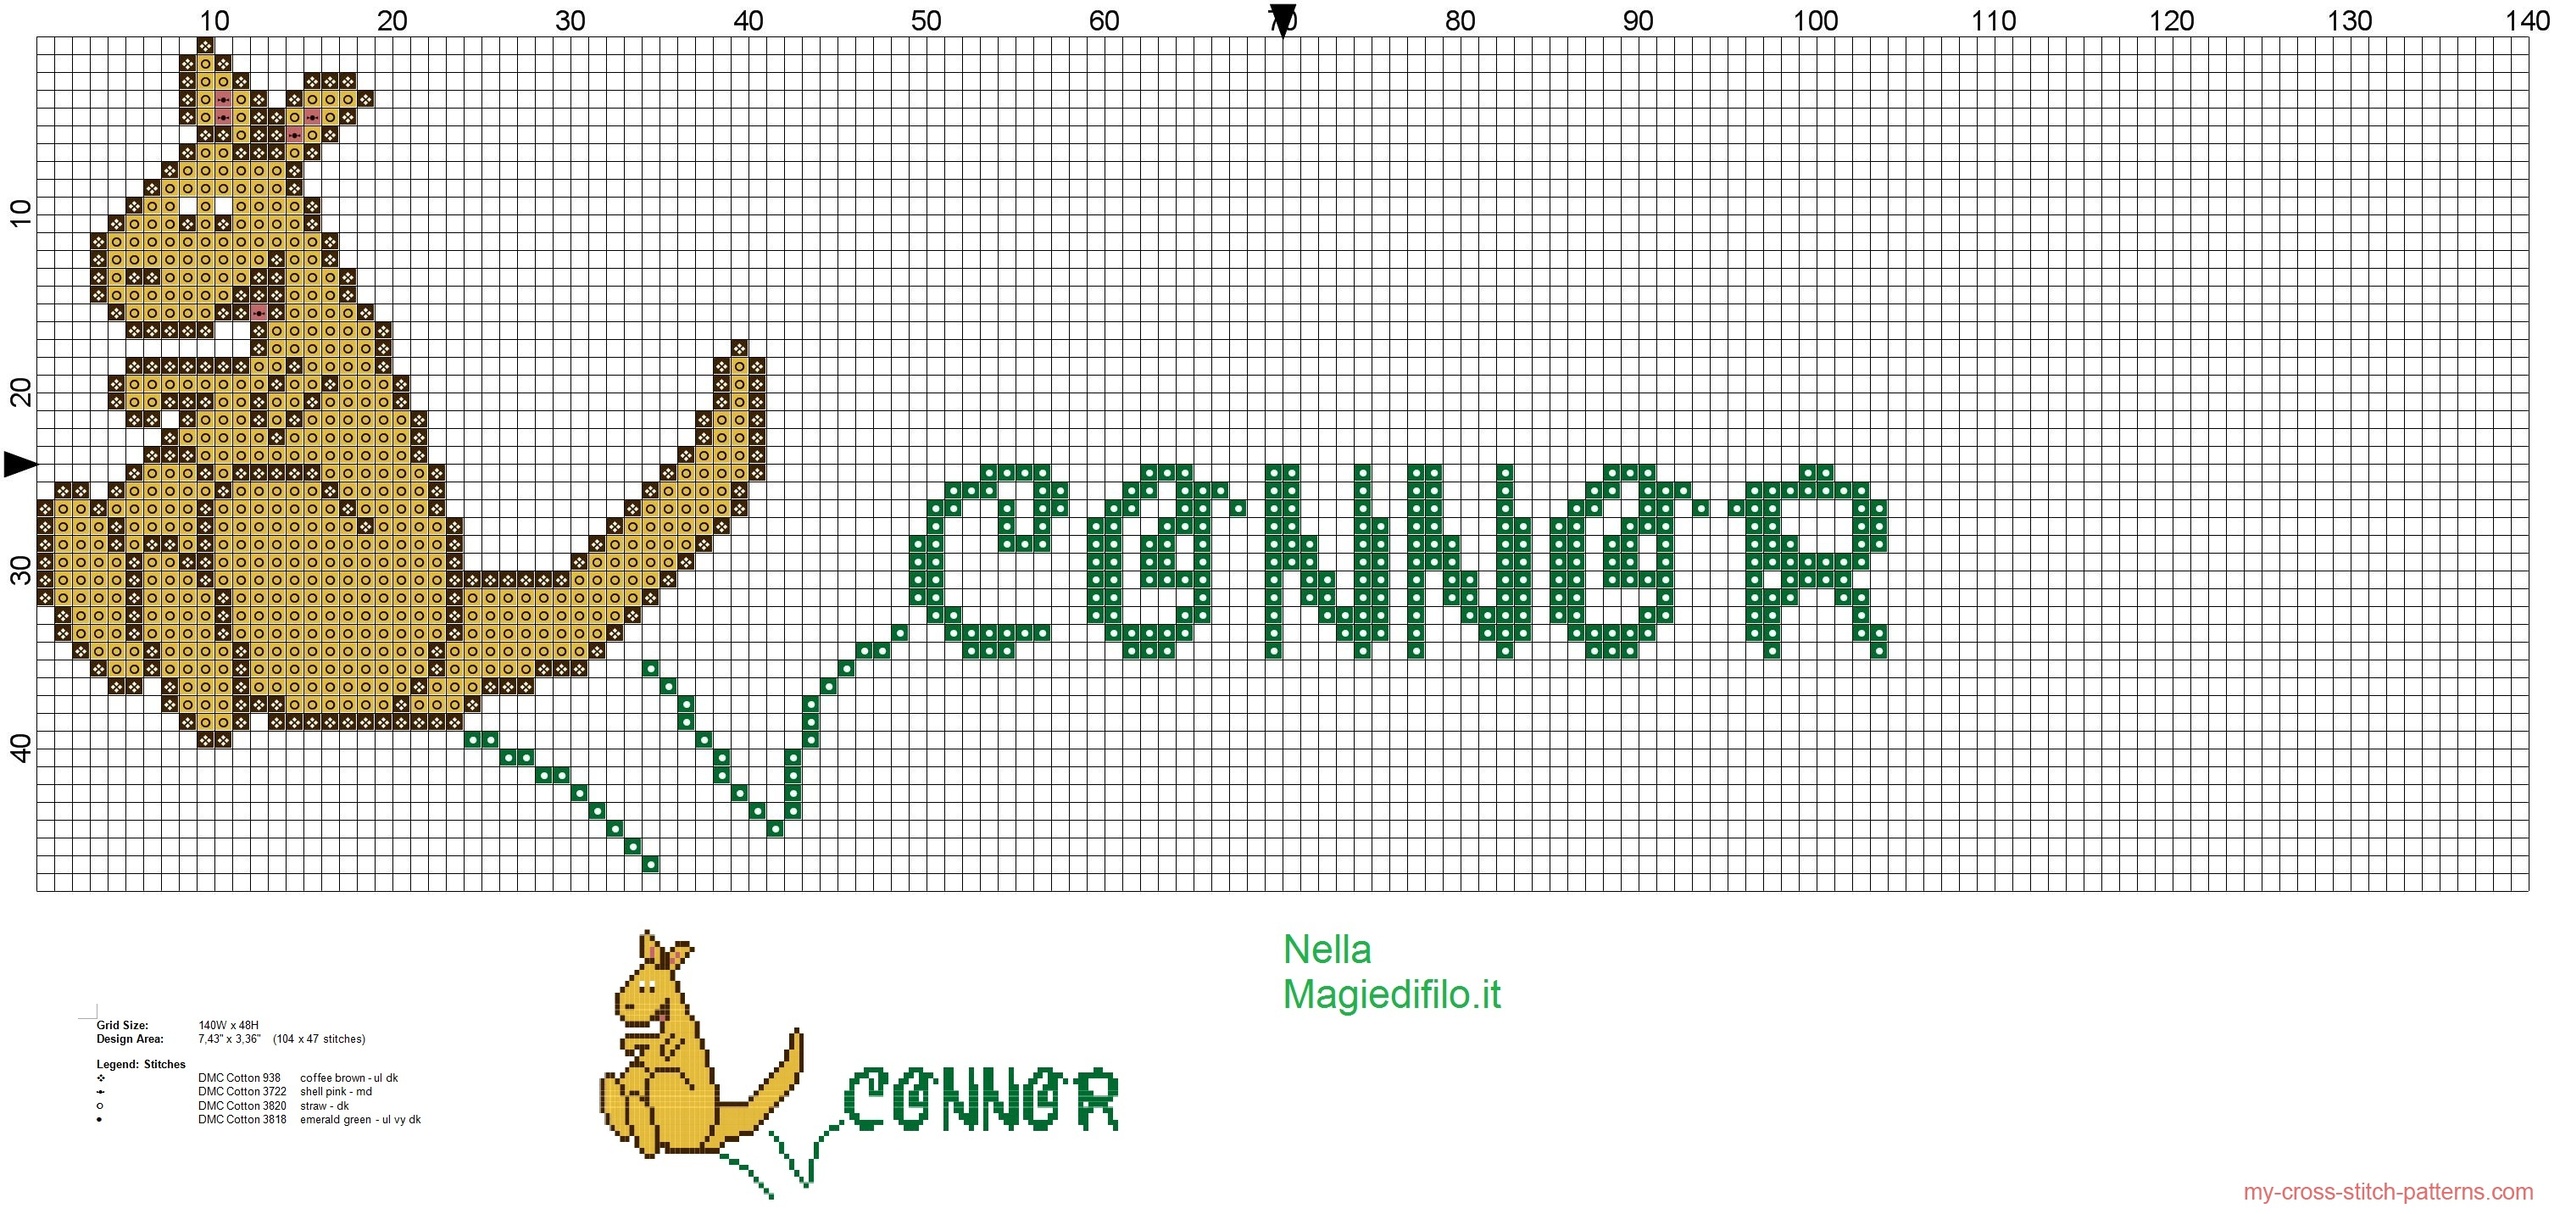 name_connor_with_kangaroo